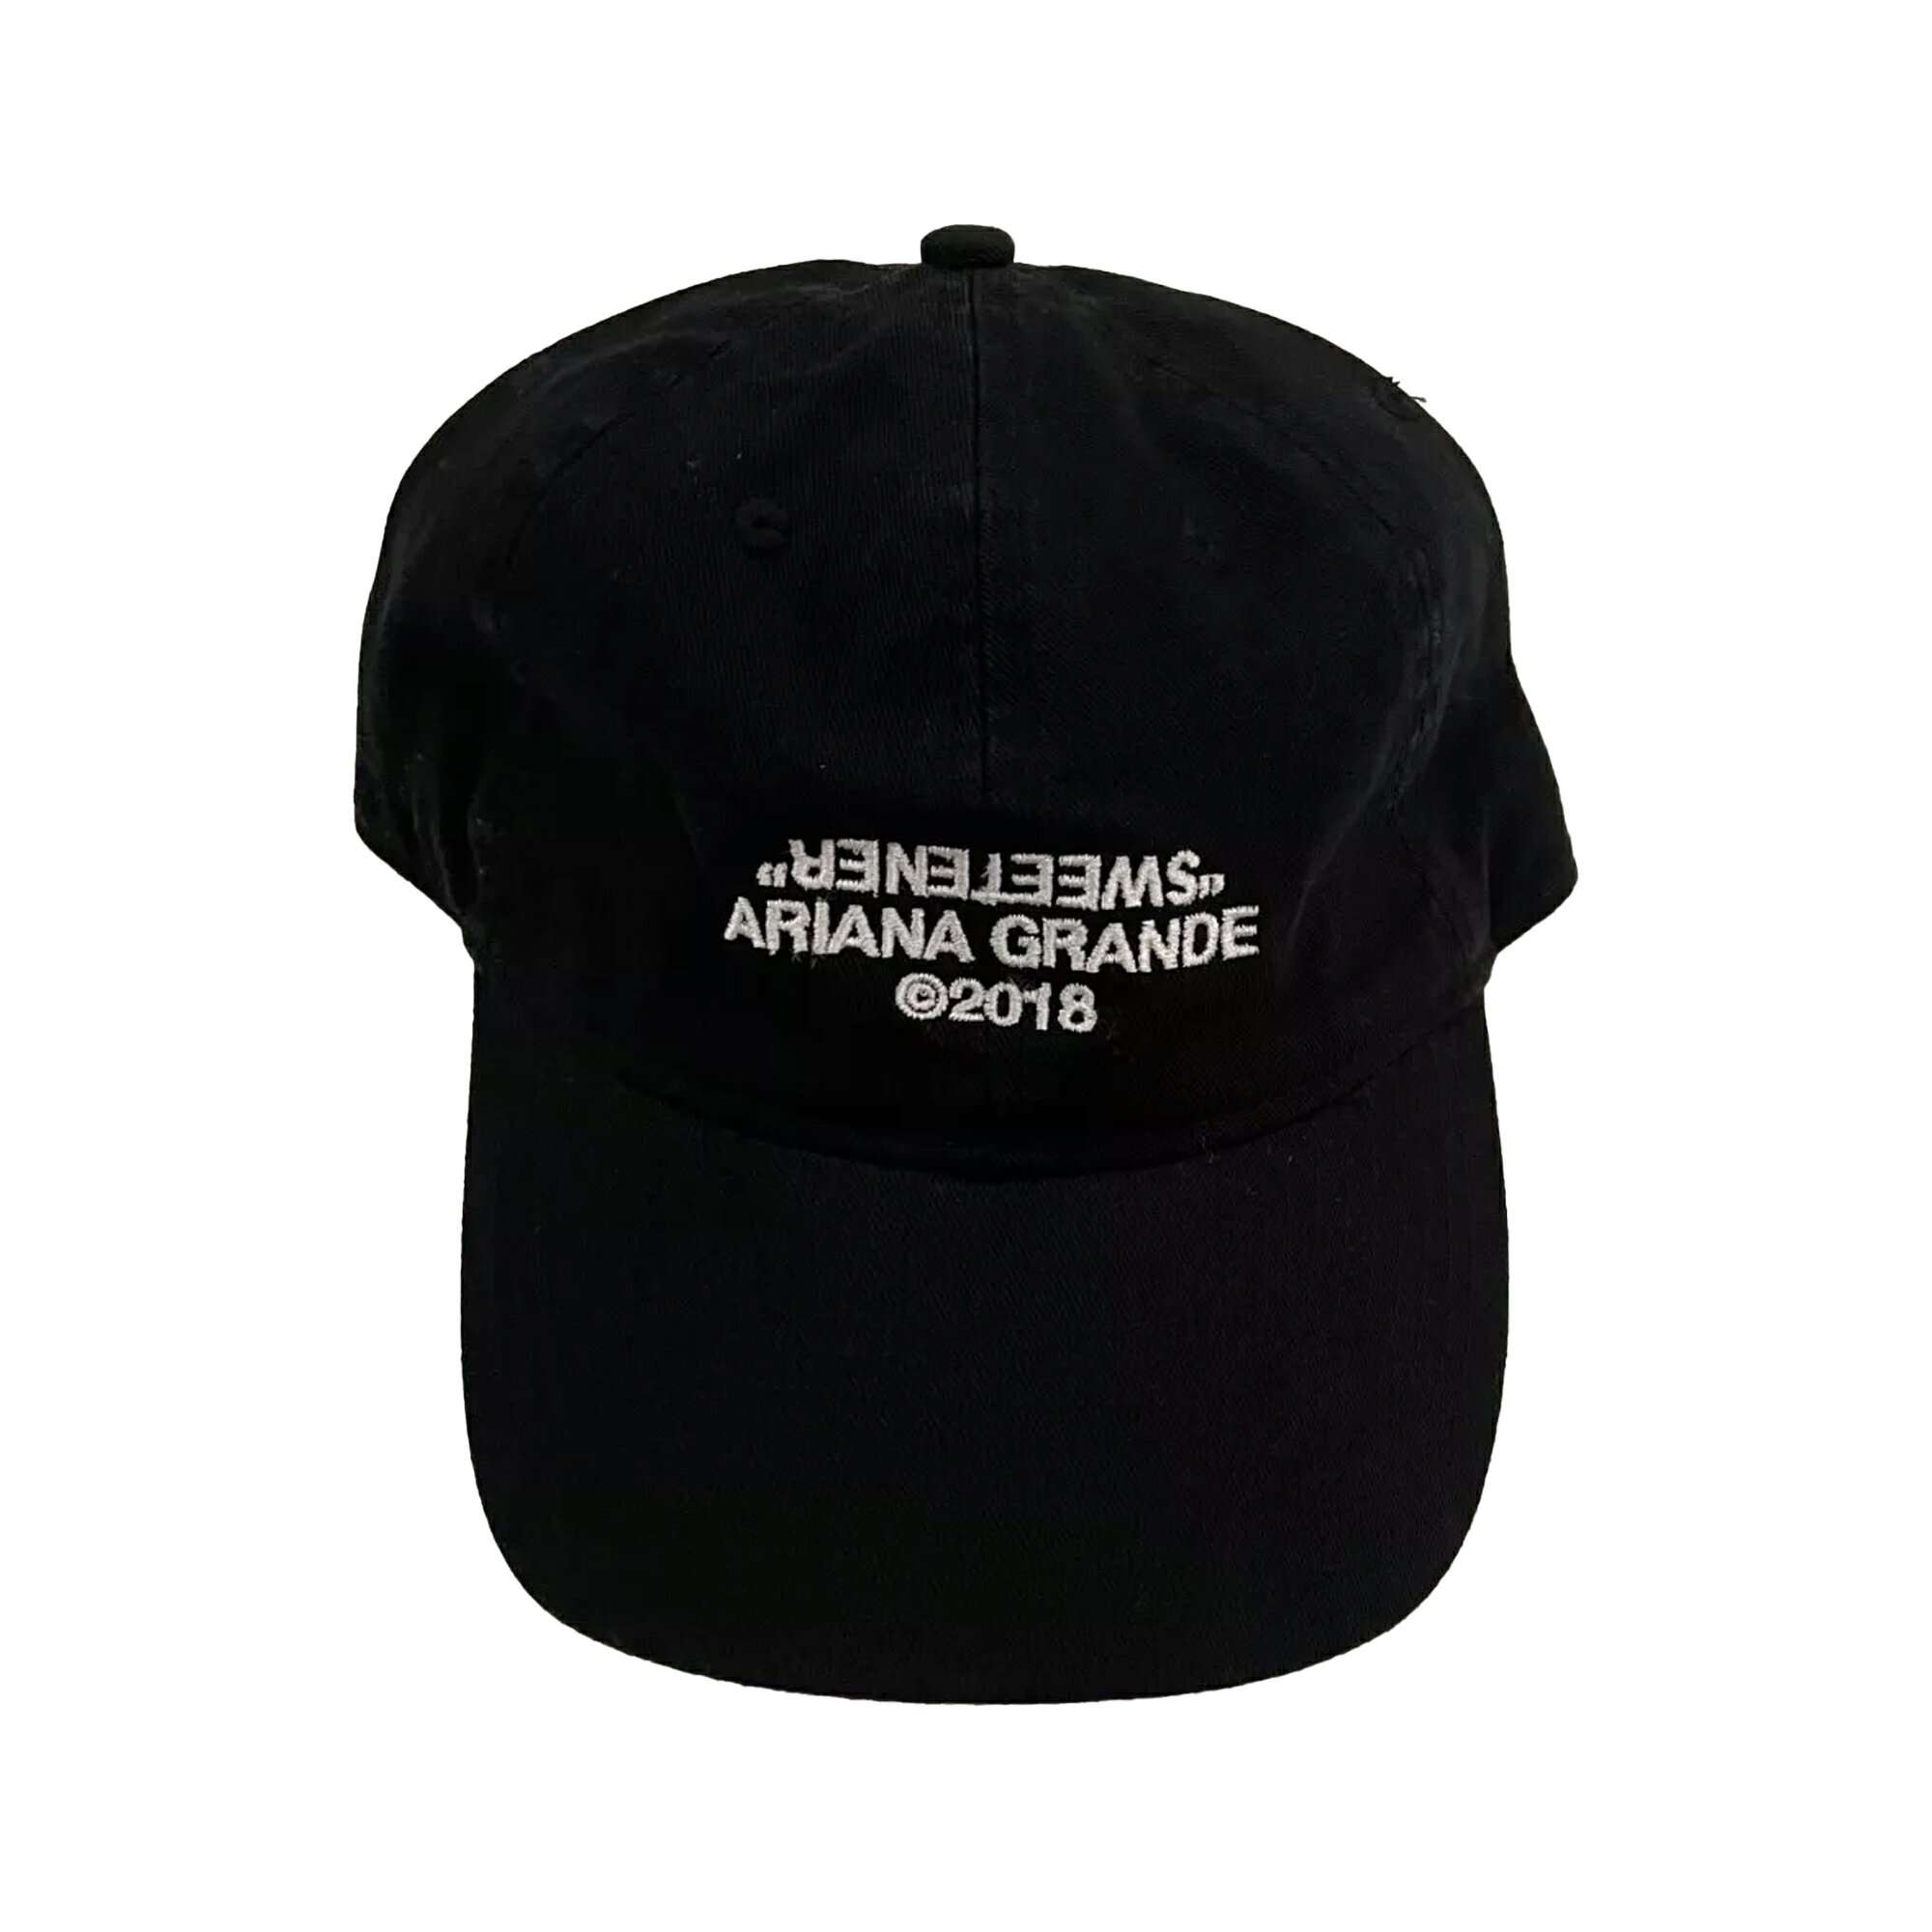 (アリアナ グランデ) Ariana Grande オフィシャル商品 ユニセックス Sweetener 2 ベースボールキャップ 帽子 【海外通販】